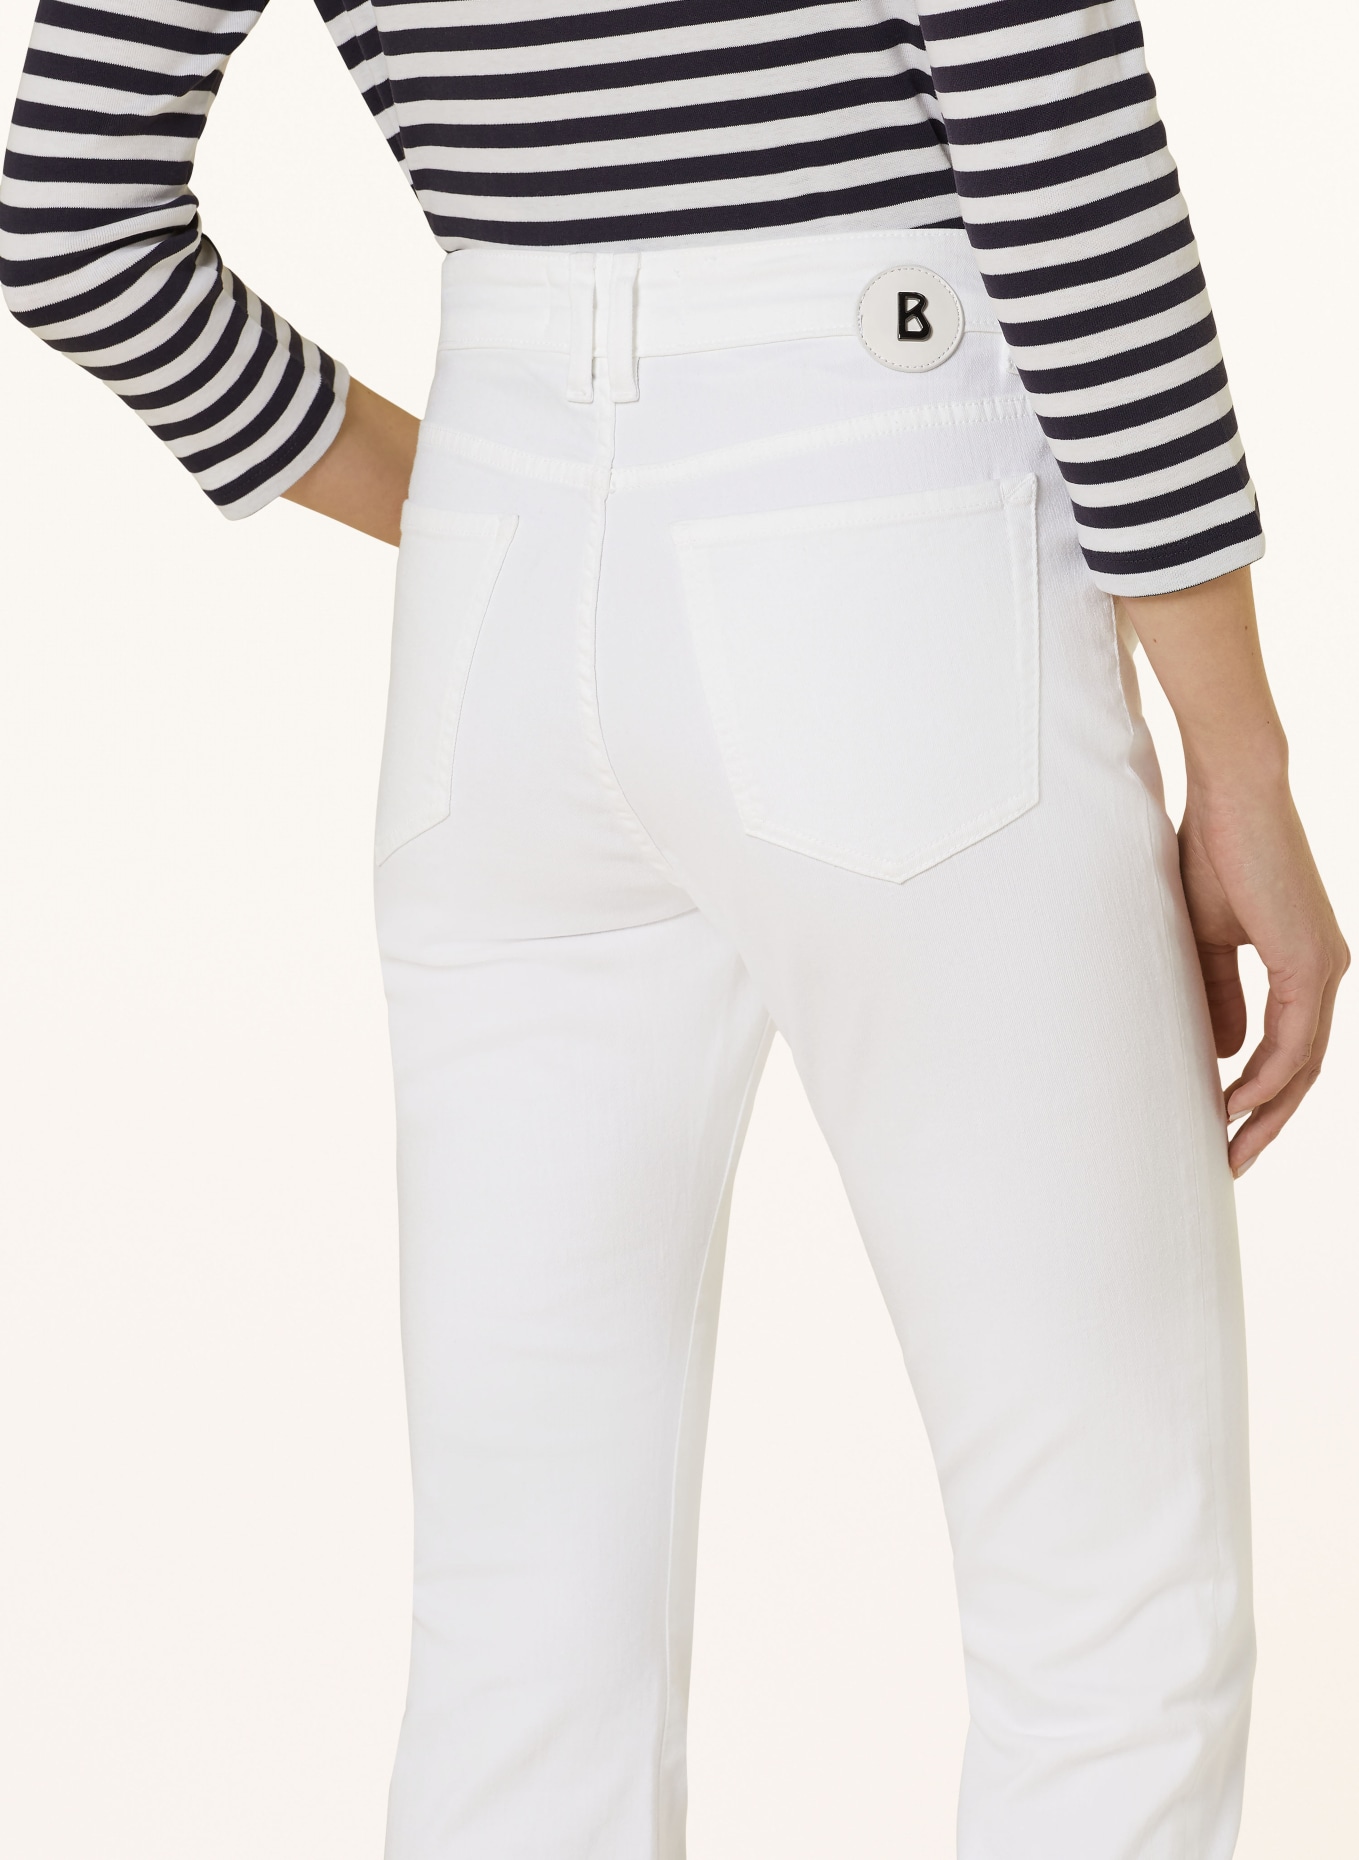 BOGNER 7/8 jeans JULIE-CF, Color: 031 White (Image 5)